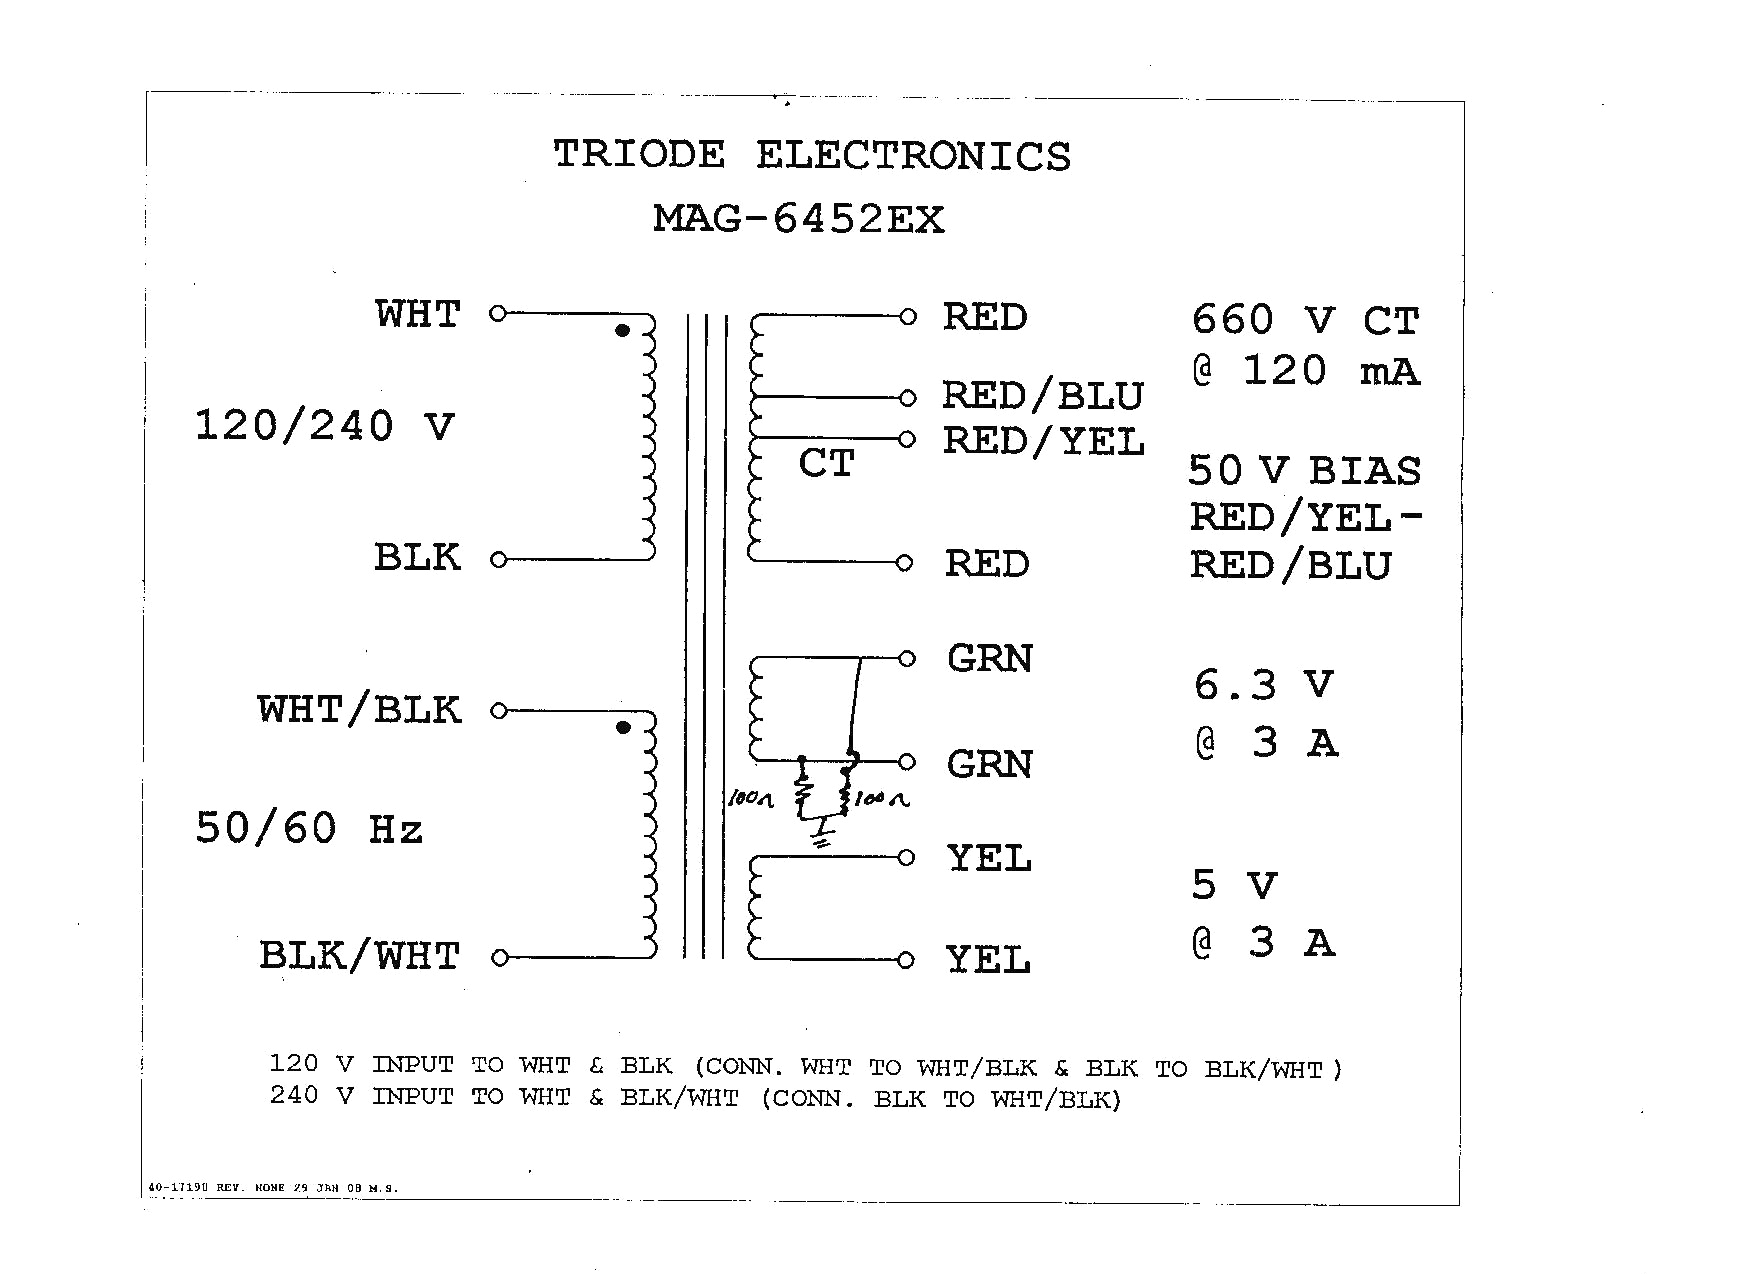 transformer wire diagram hs schema diagram databasetransformer wire diagram wiring diagram data transformer wire diagram hs